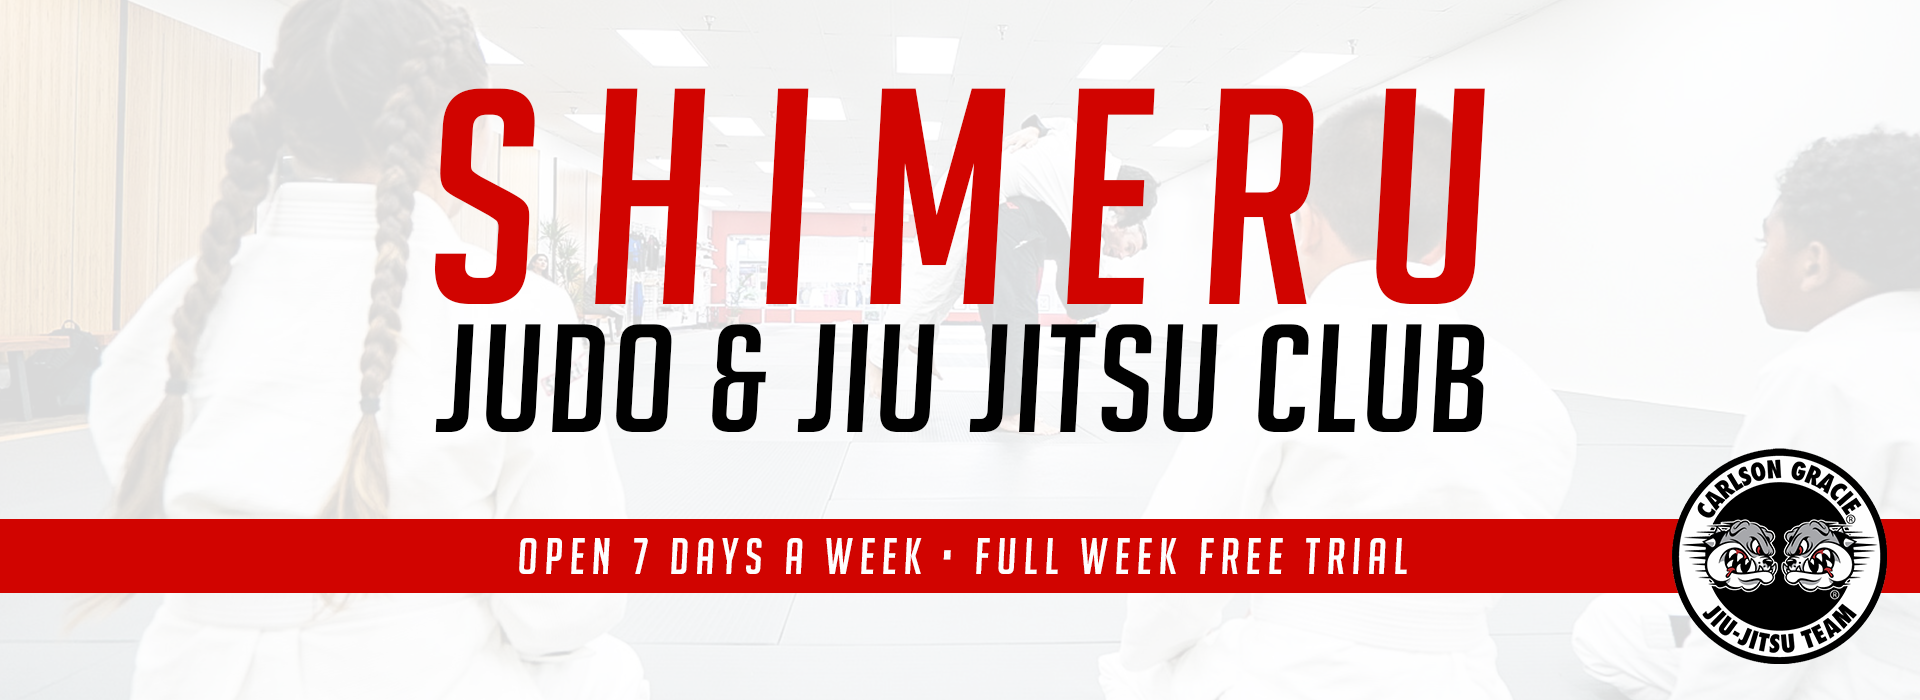 Shimeru Judo & Jiu Jitsu Club photo